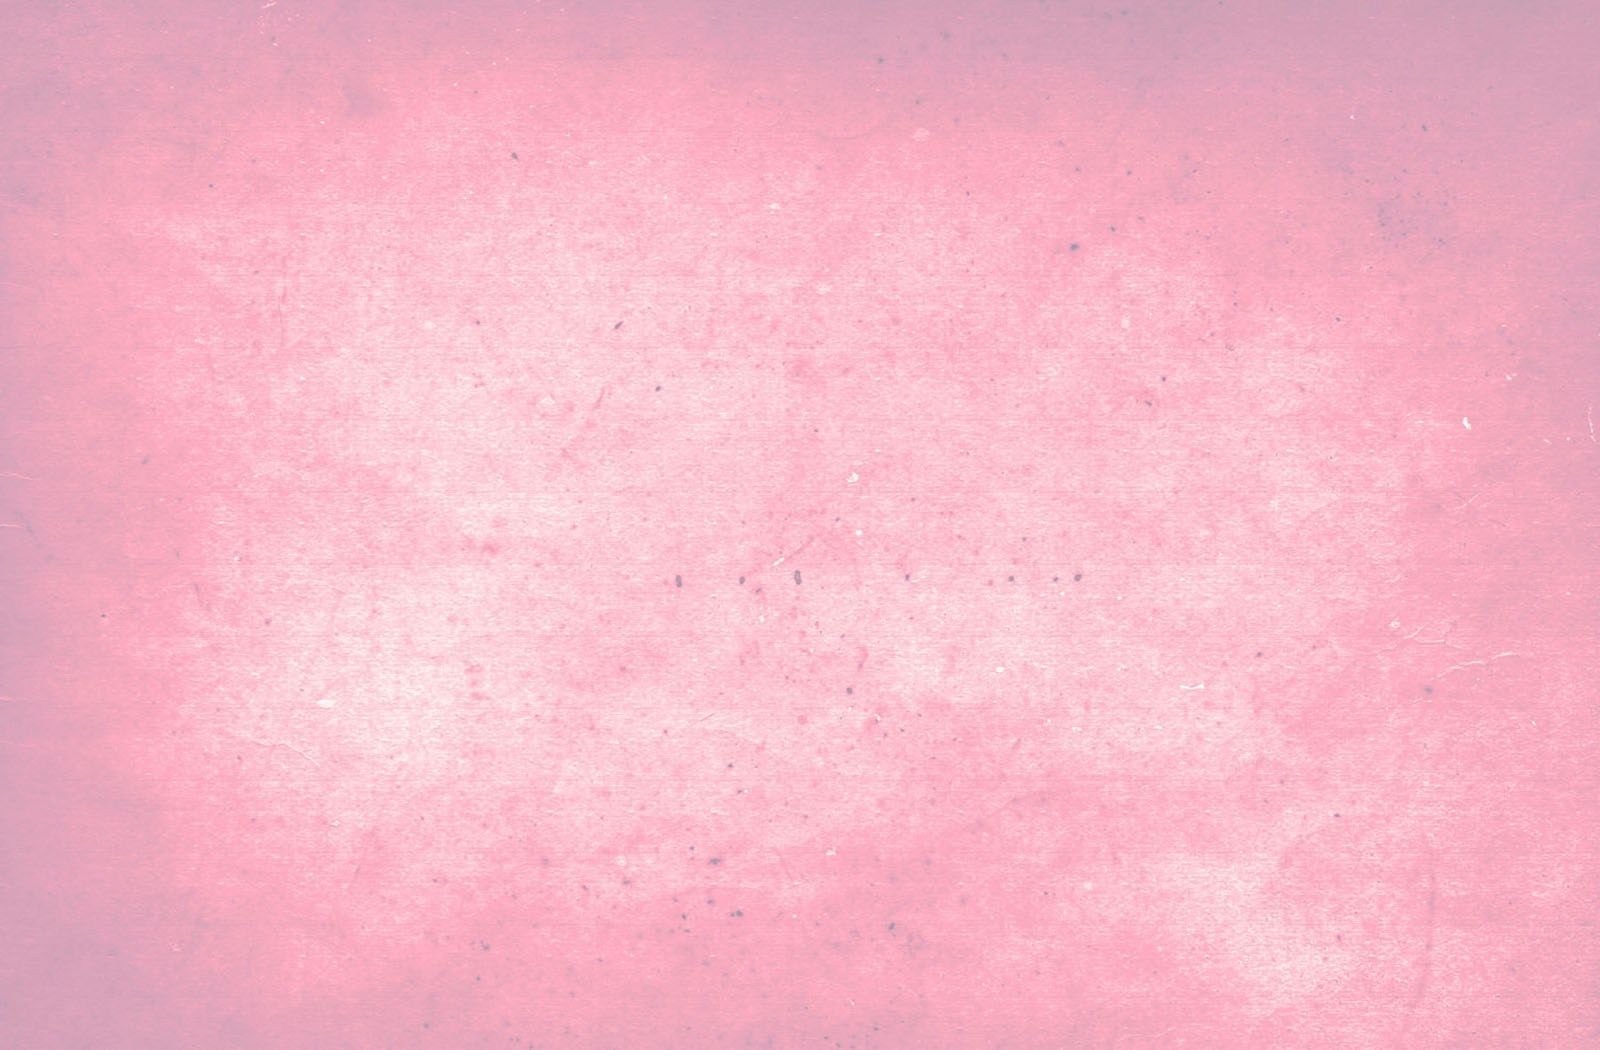 Pastel Pink Aesthetic Laptop Wallpaper Free Pastel Pink